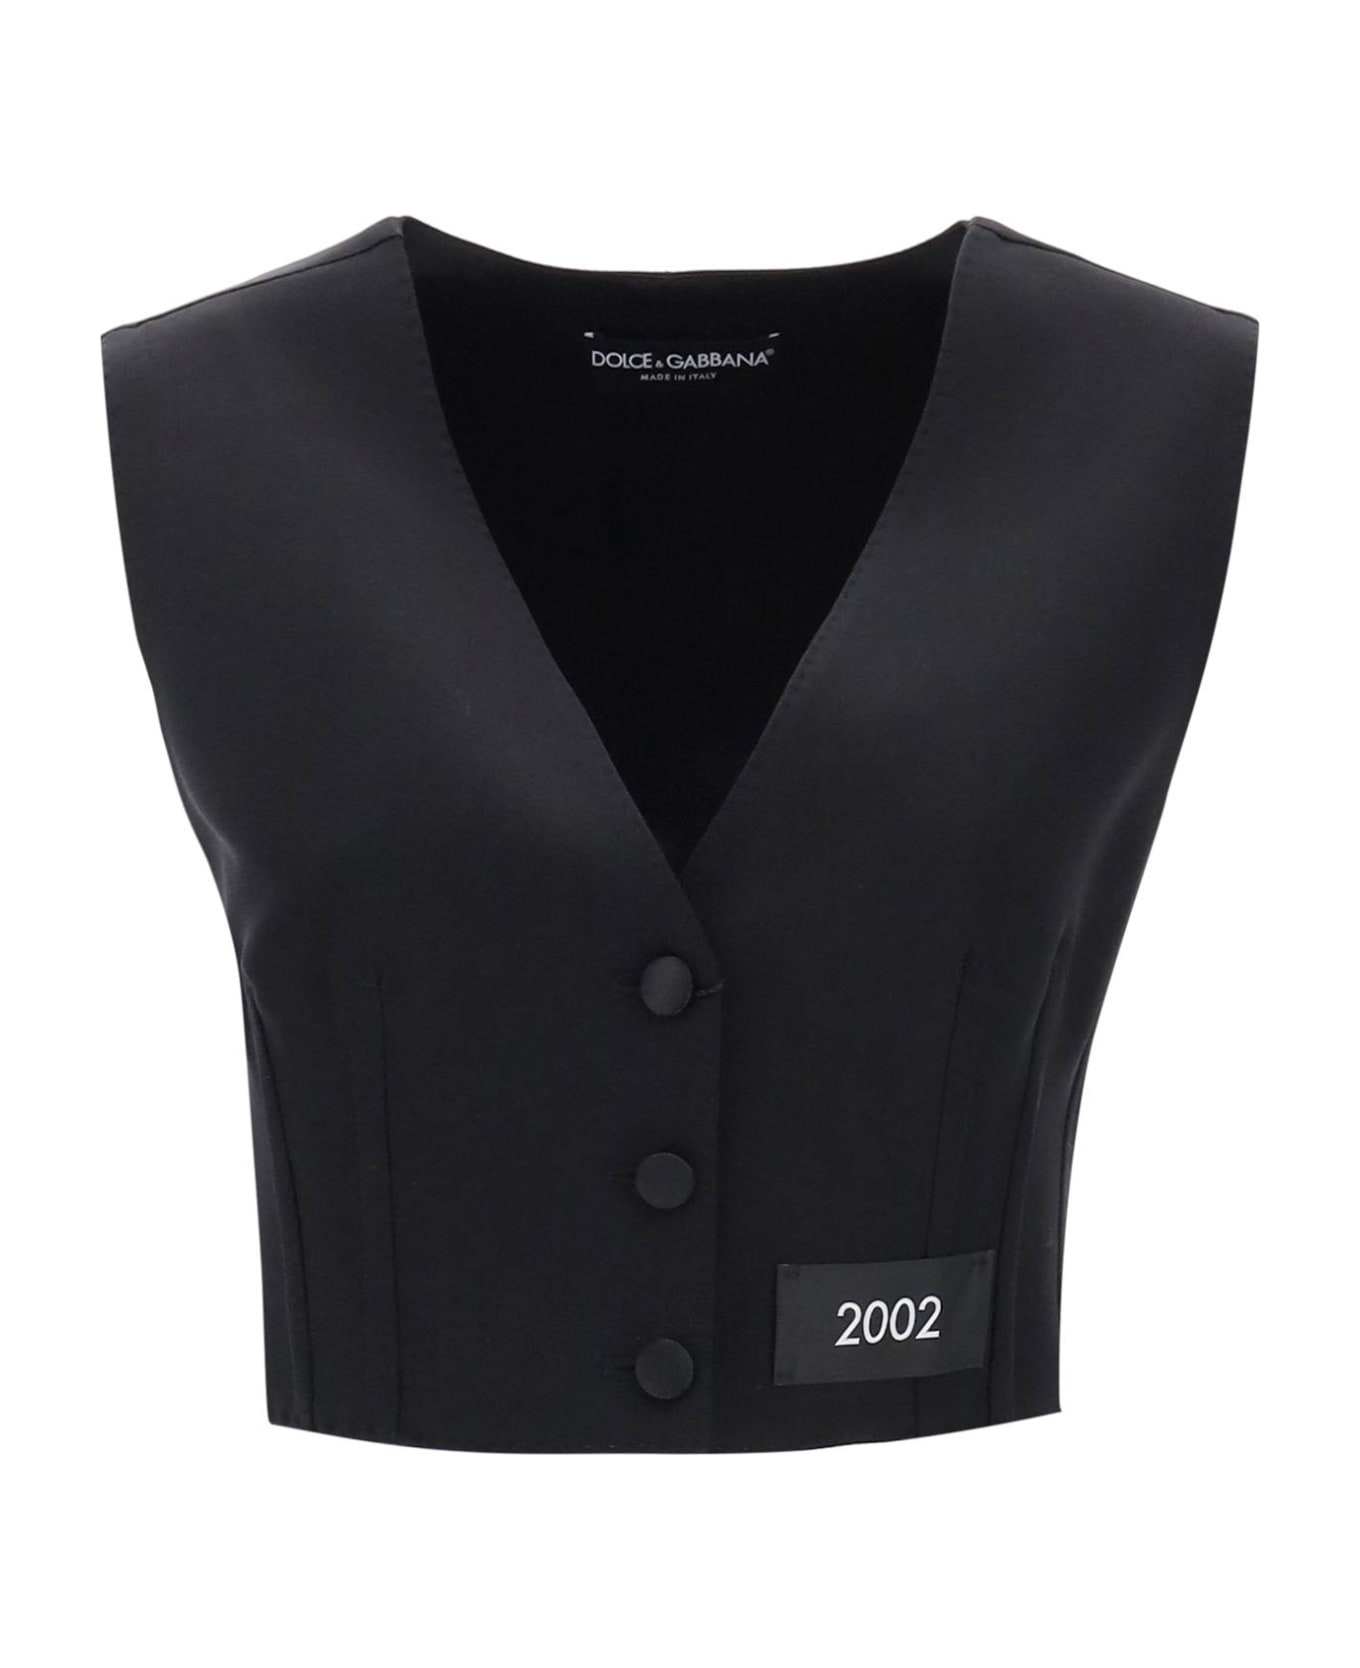 Dolce & Gabbana Tailoring Waistcoat - NERO (Black) ベスト